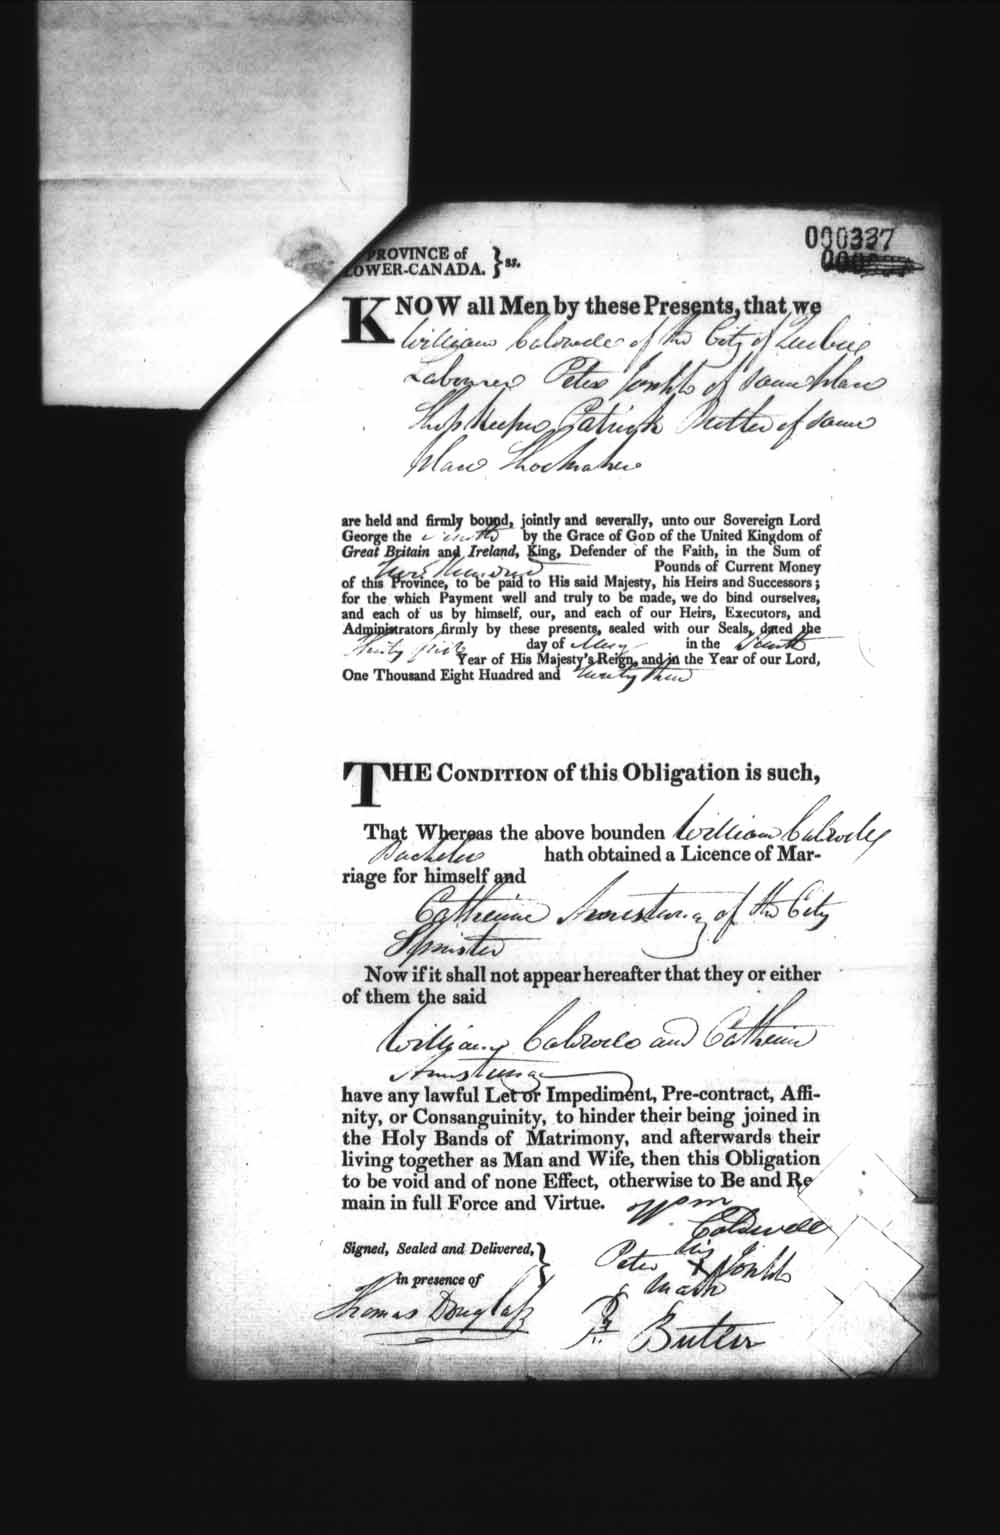 Page numérisé de Cautionnements de mariages pour le Haut-Canada et le Bas-Canada (1779-1865) pour l'image numéro: e008236224